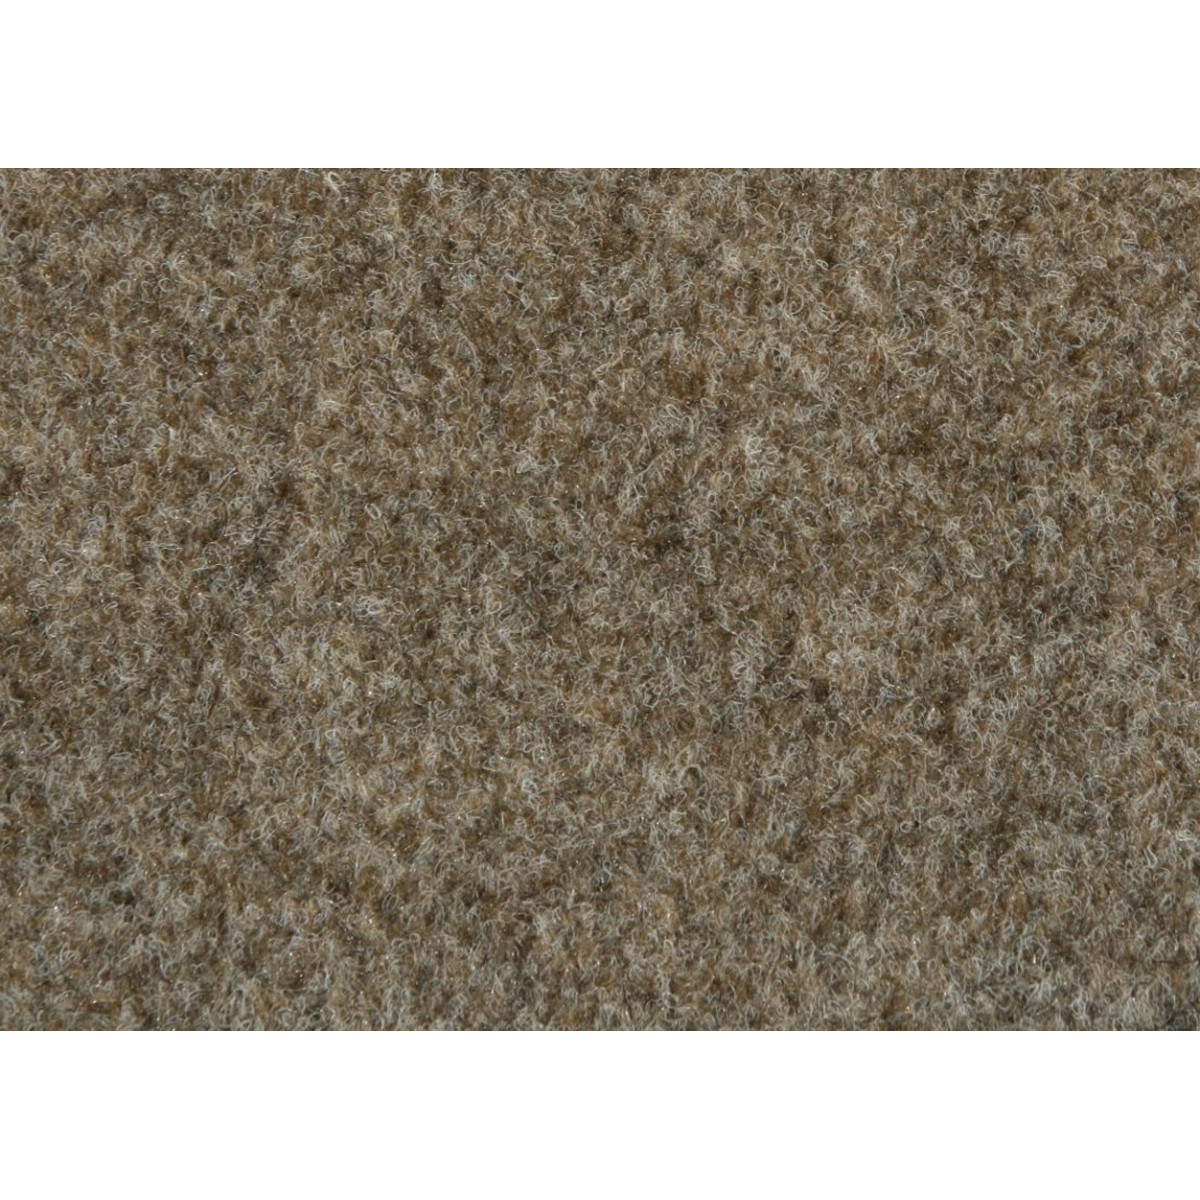 Metrážový koberec New Orleans 142 s podkladem resine, zátěžový